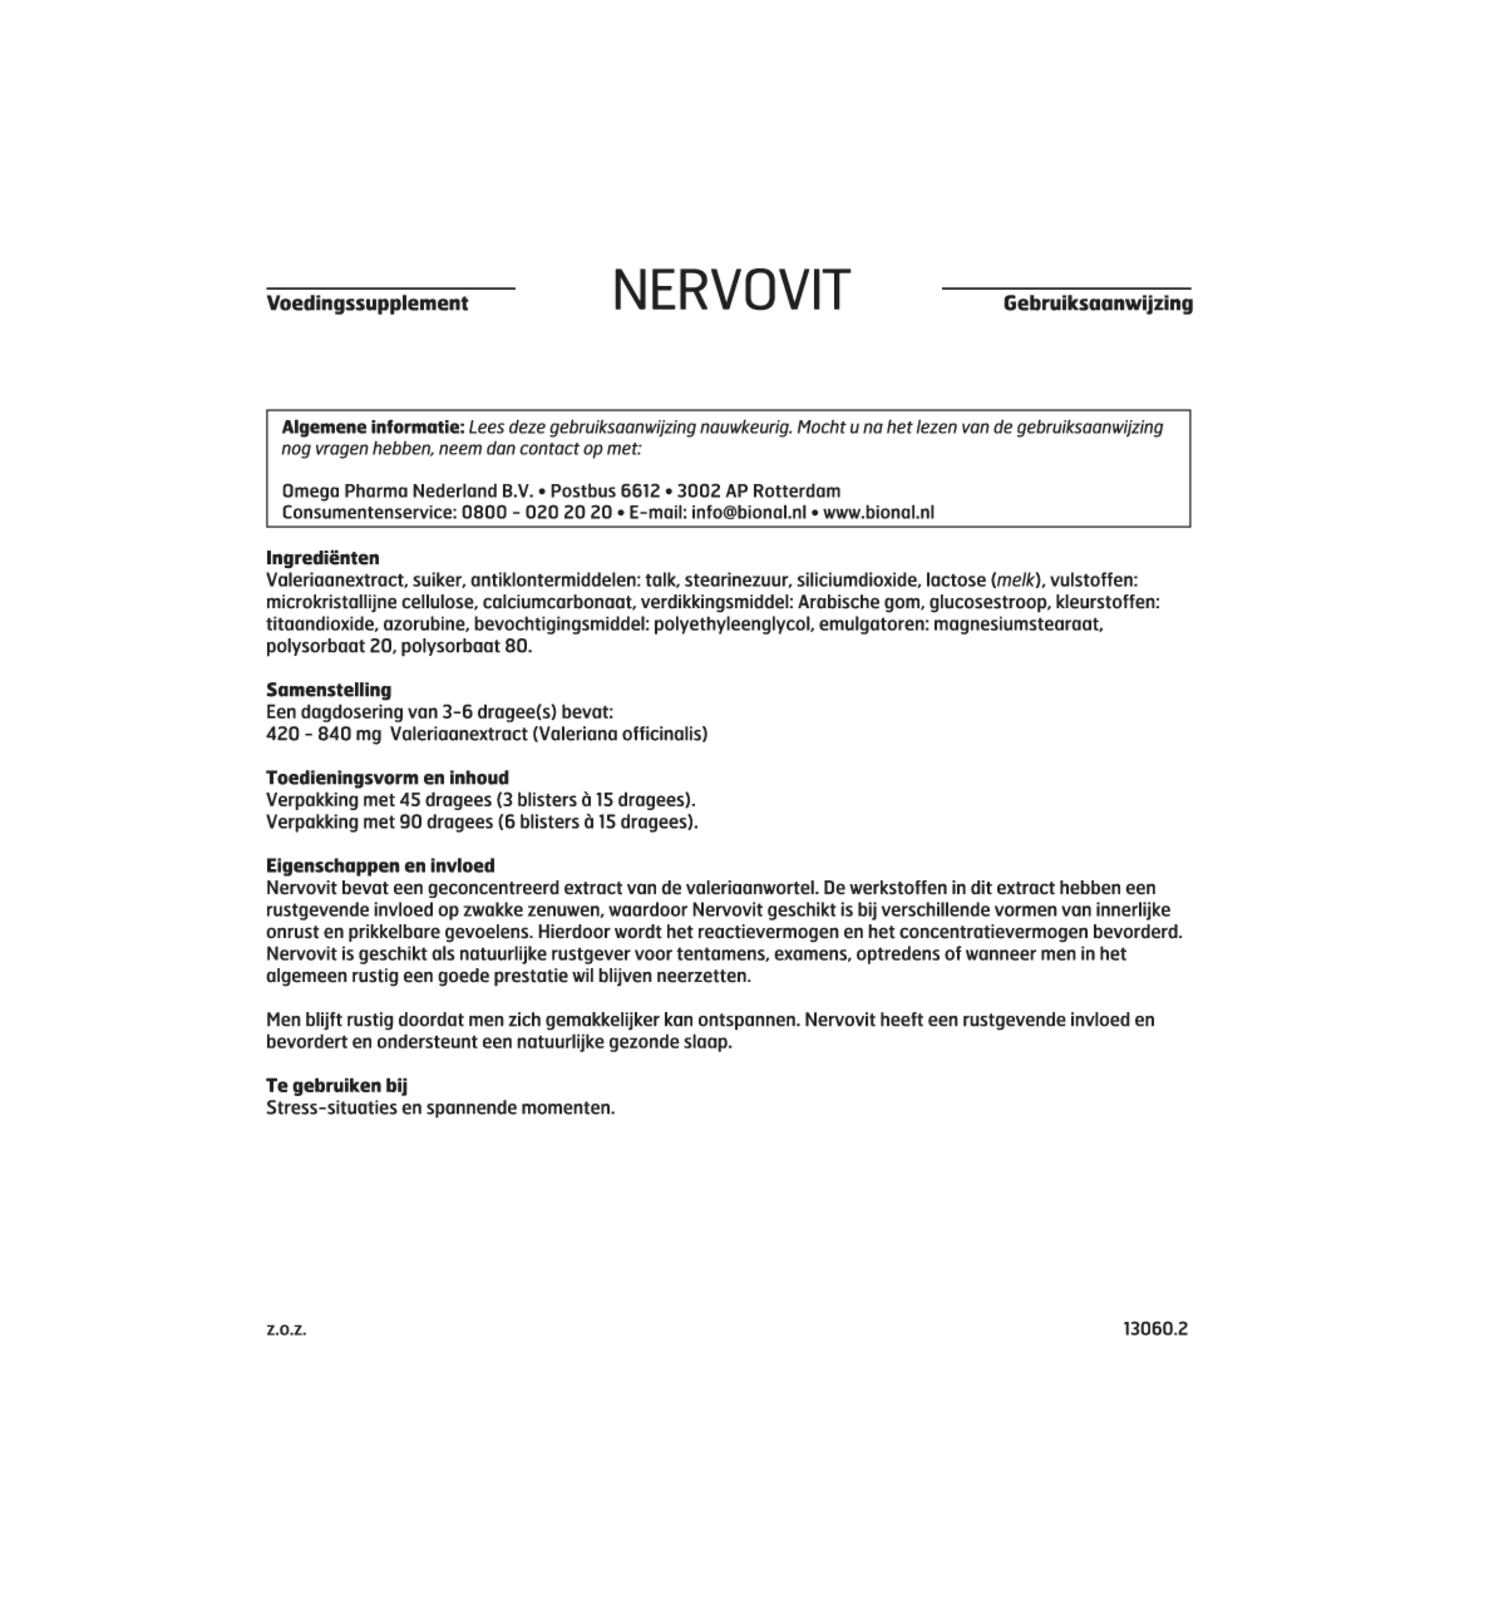 Nervovit Tabletten afbeelding van document #1, gebruiksaanwijzing